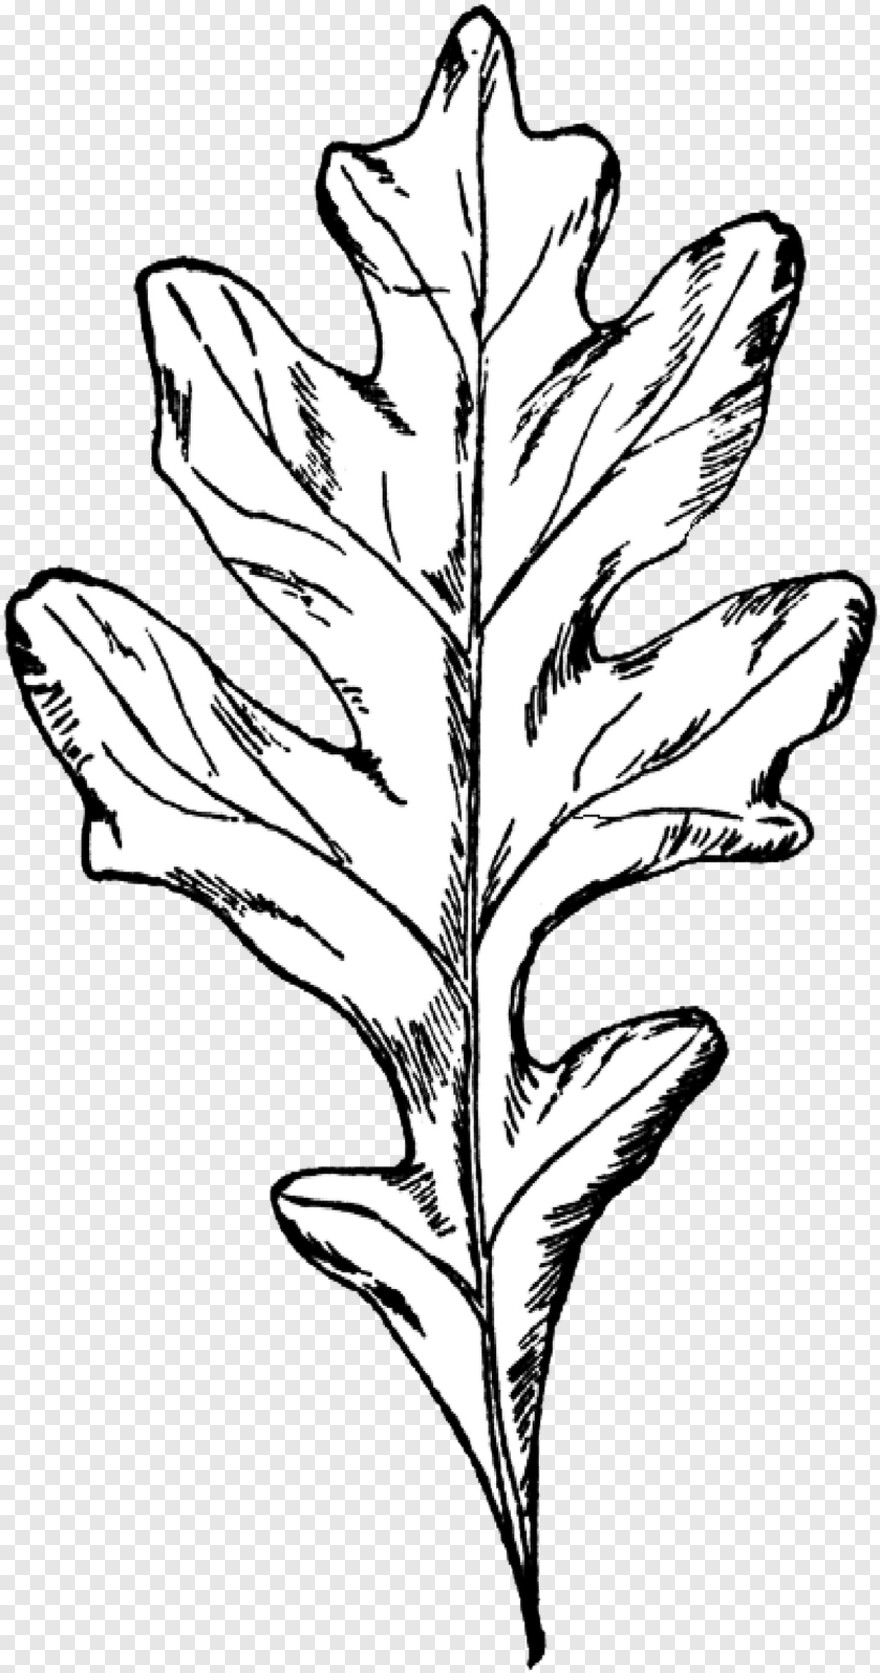 oak-leaf # 355986